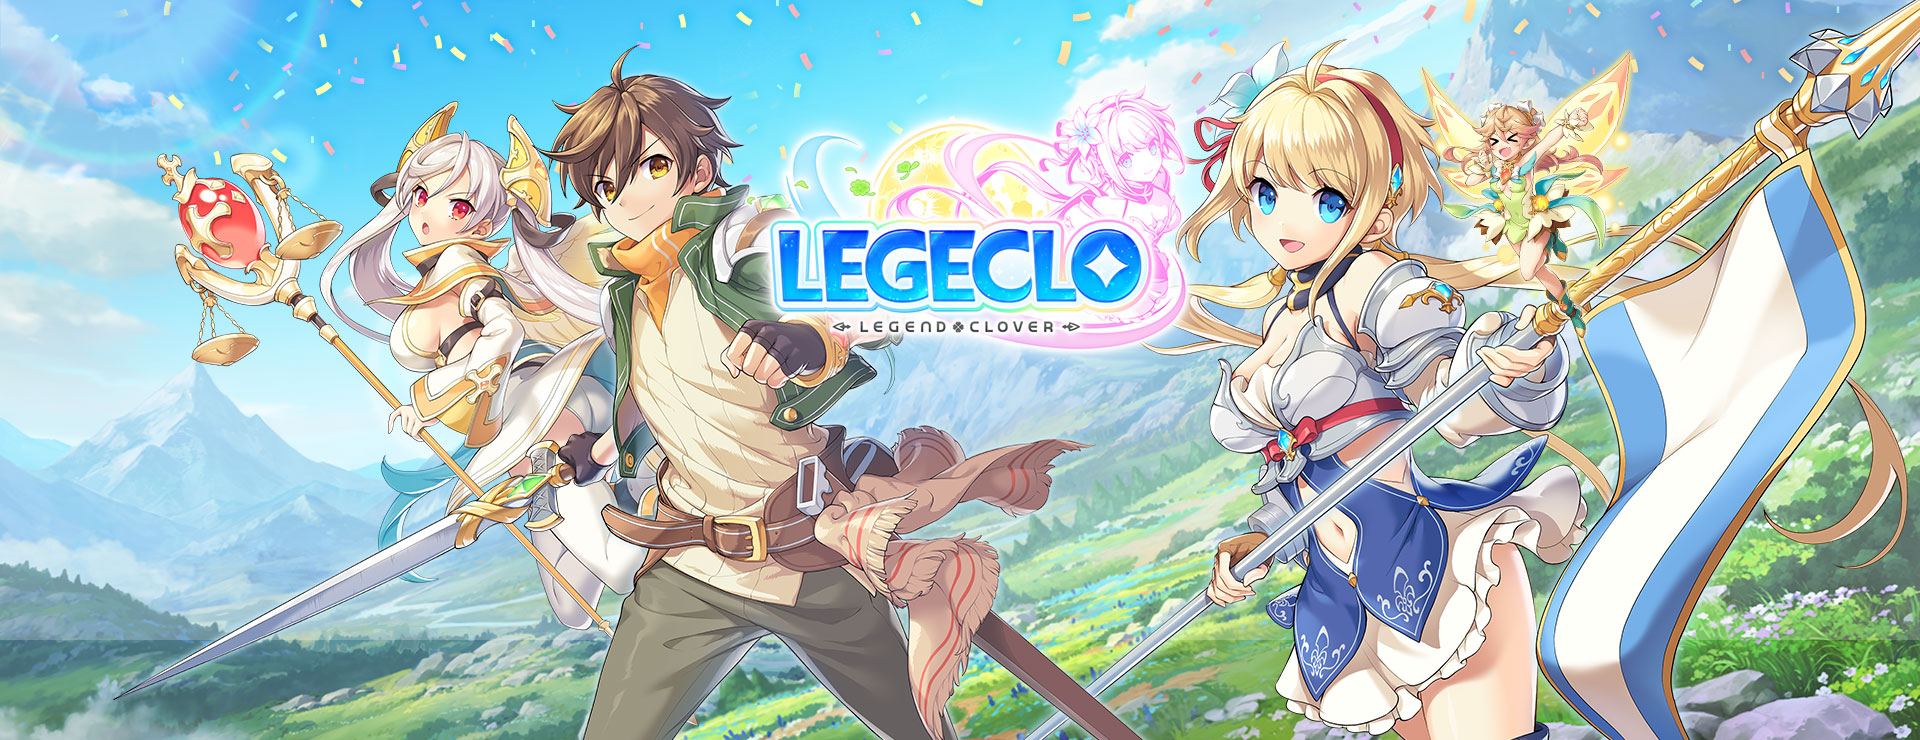 Legeclo: Legend Clover - Juegos RPG Estrategia por Turnos Juego